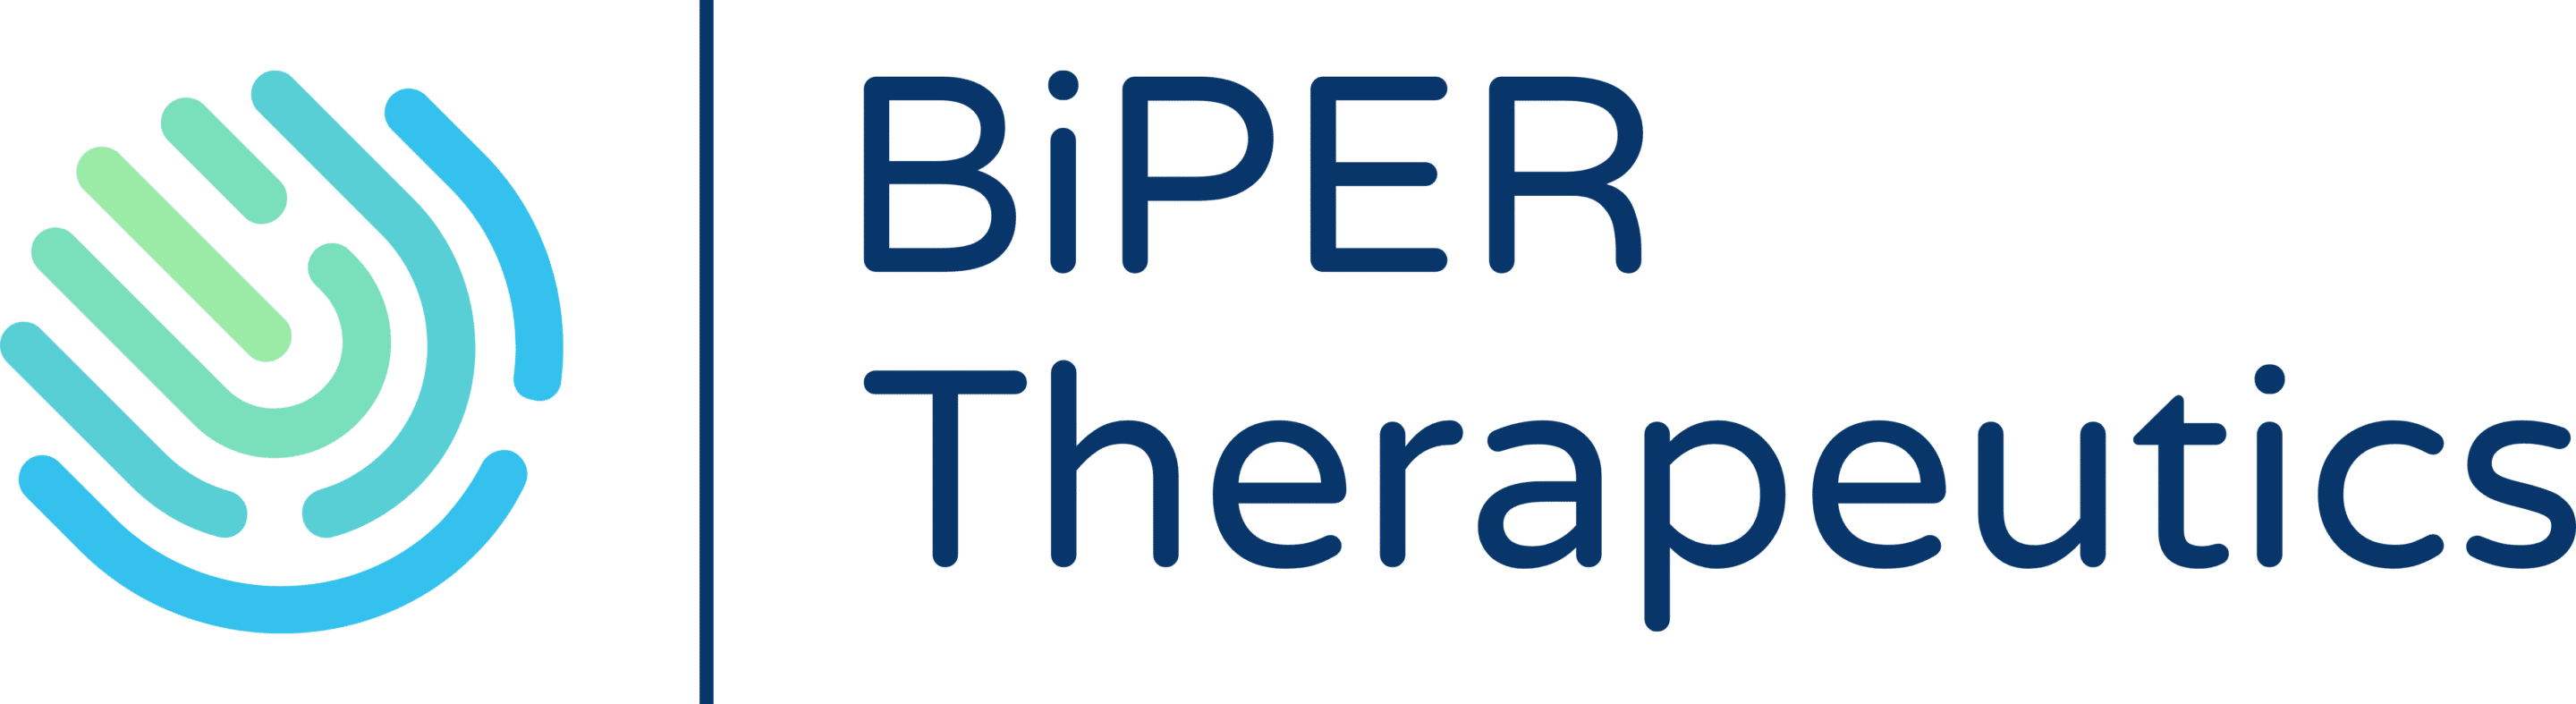 logo_biper-therapeutics